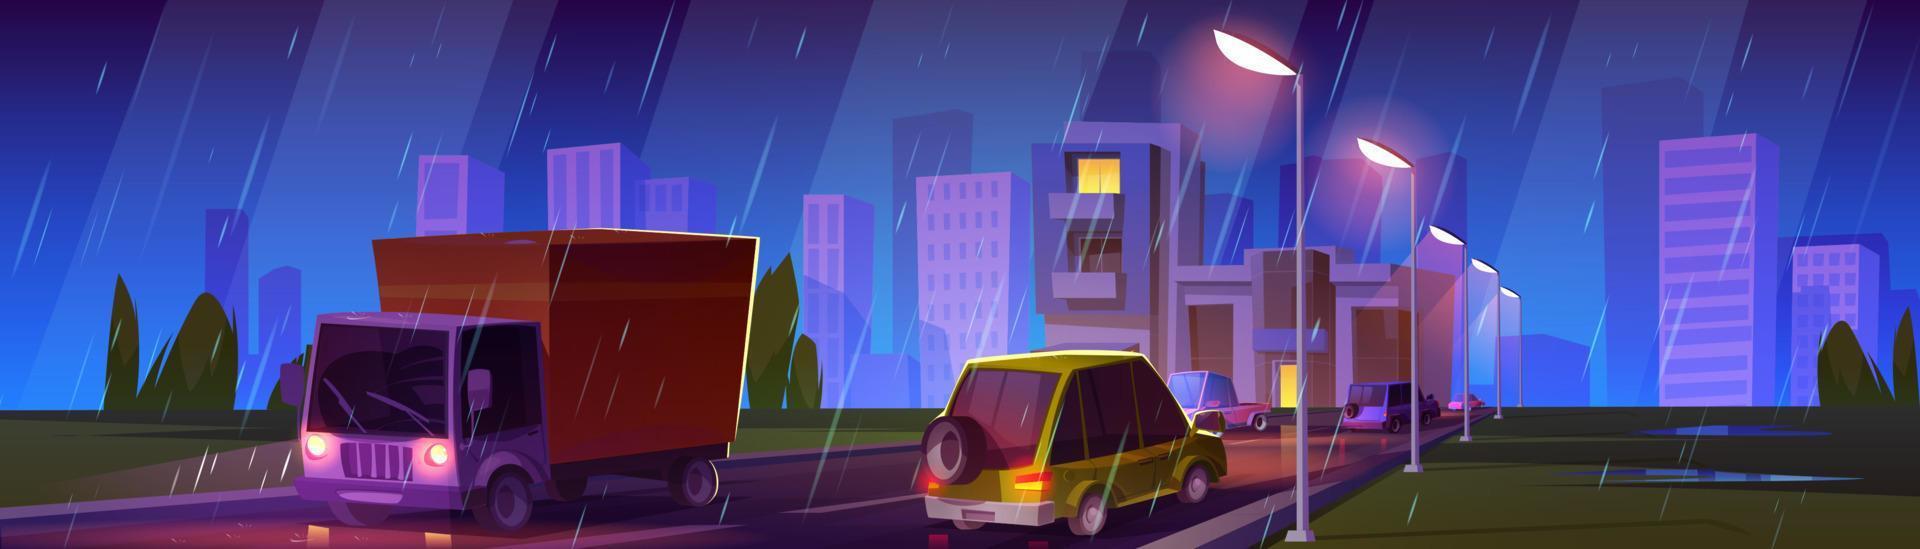 nacht stad verkeer in regenachtig weer vector